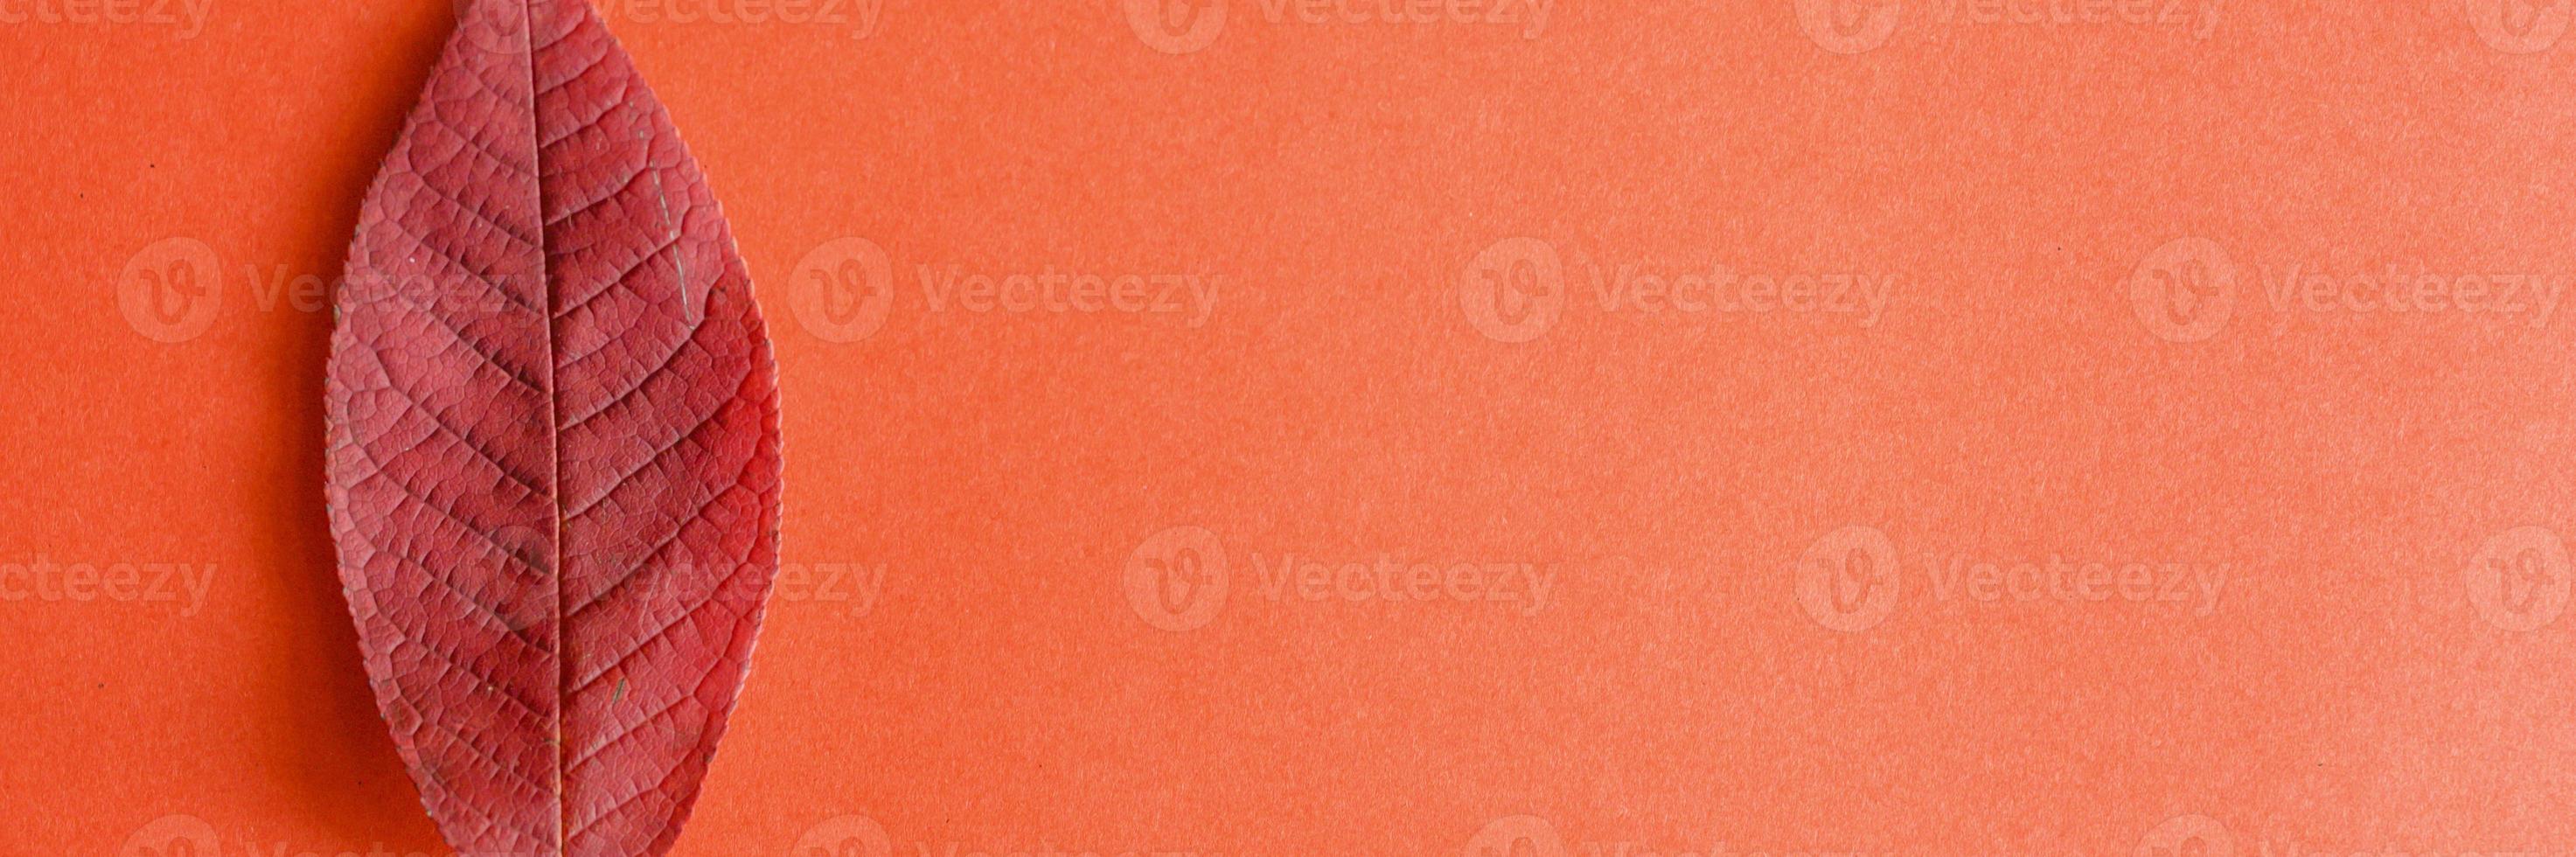 einzelnes rotes gefallenes Herbstkirschblatt auf einem roten Papierhintergrund foto